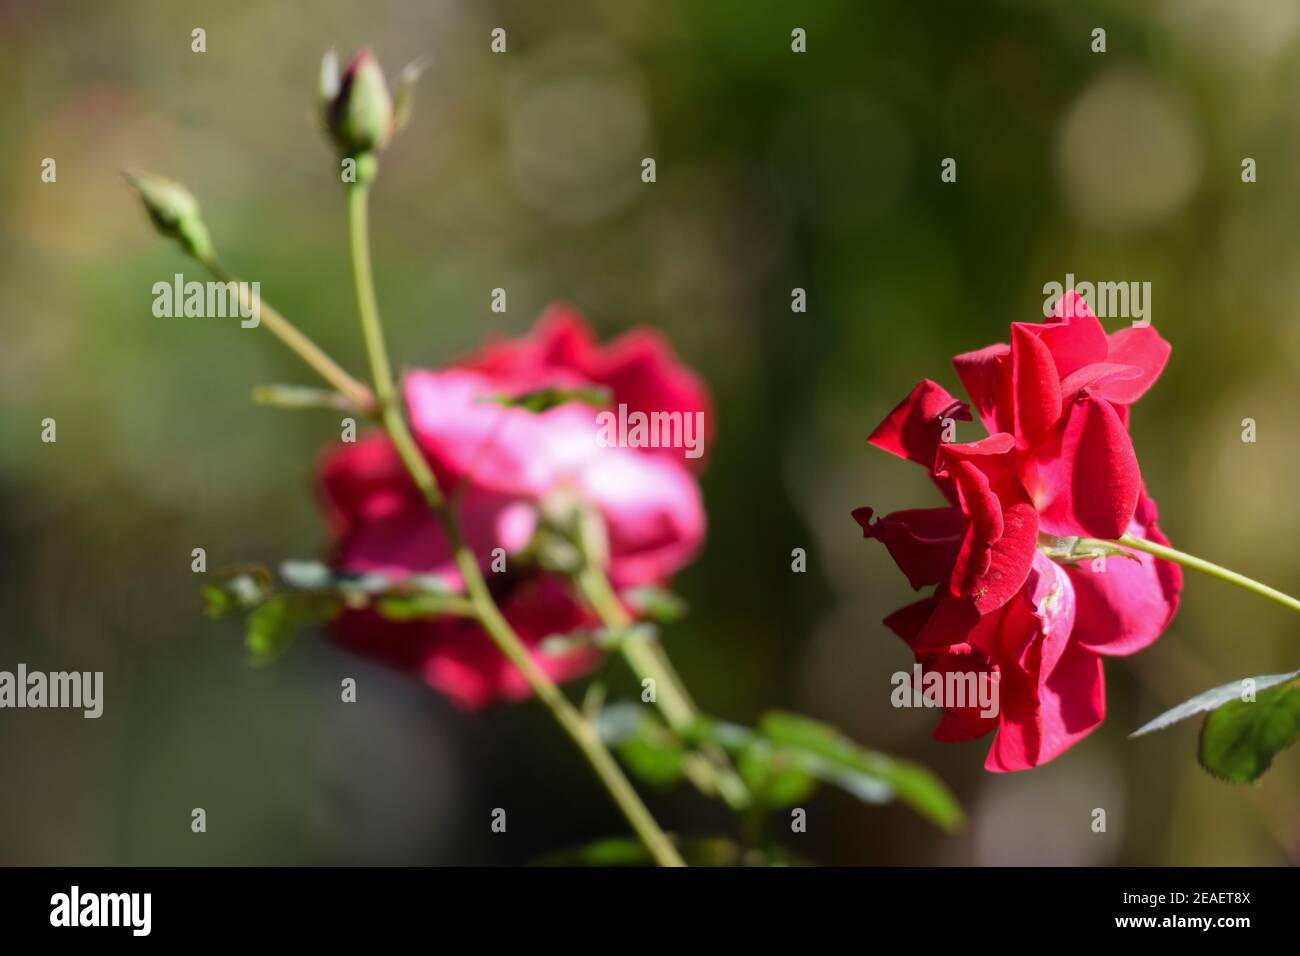 Kashmiri Rose Desi Rose Pflanze mit Trauben Stamm. Knospen und blühte große indische pakistanische Rose Blumen Rückseite Ansicht der Rose Blume.Selektive Fokus Stockfoto